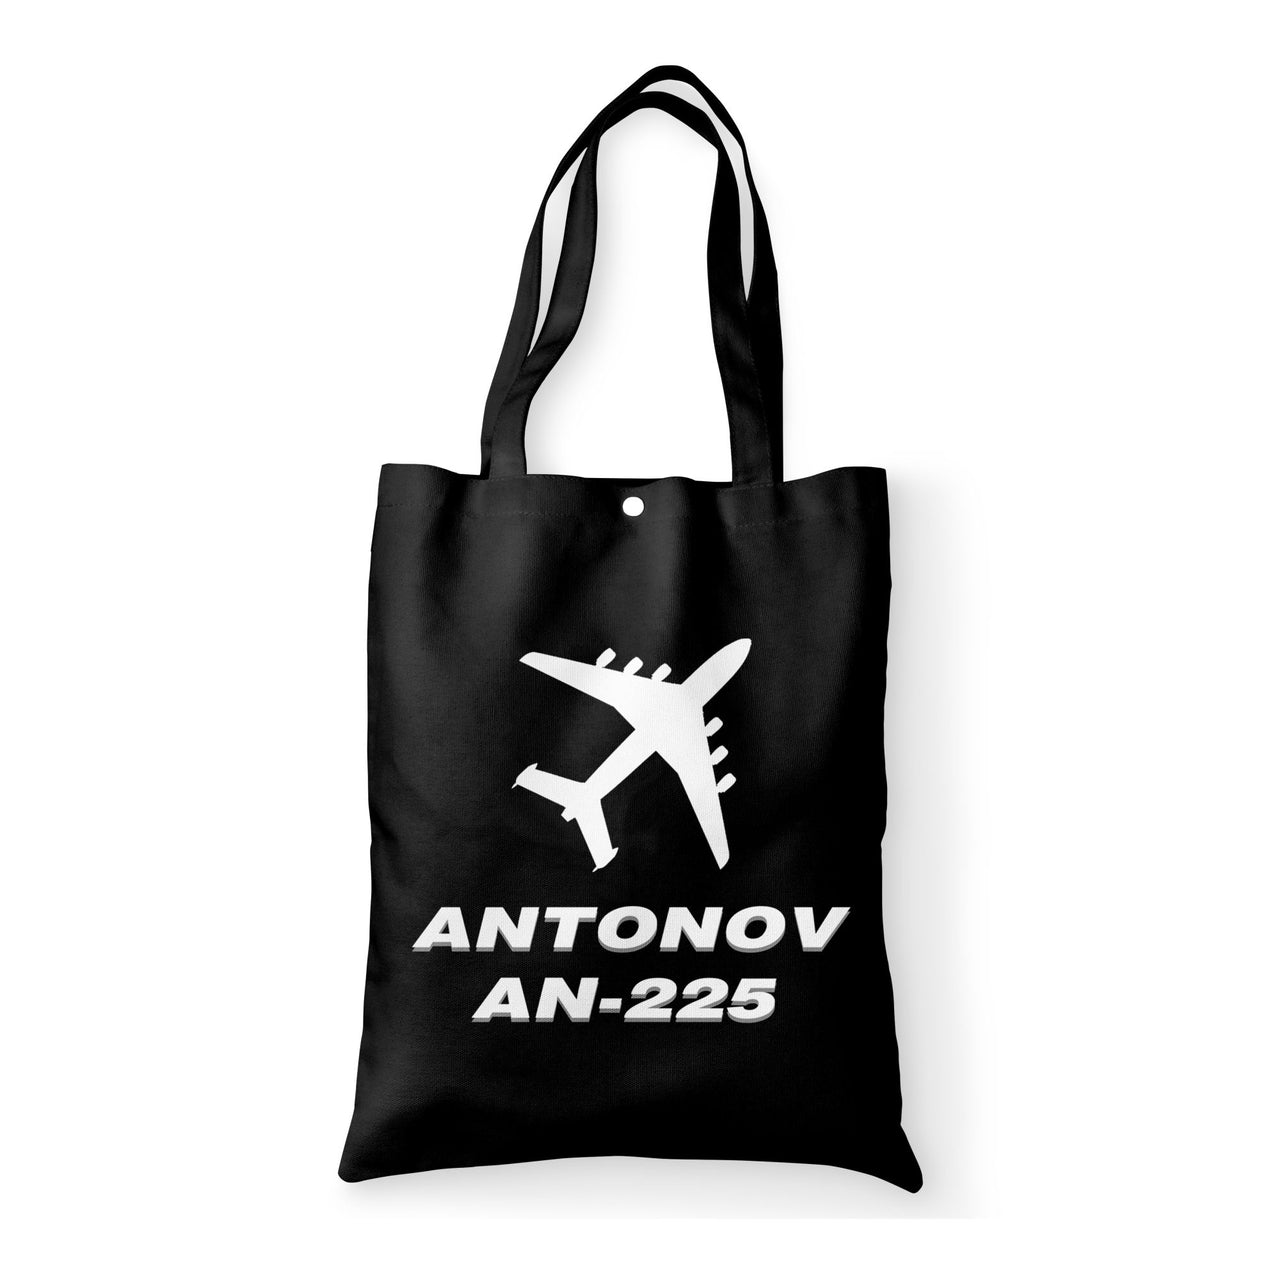 Antonov AN-225 (28) Designed Tote Bags